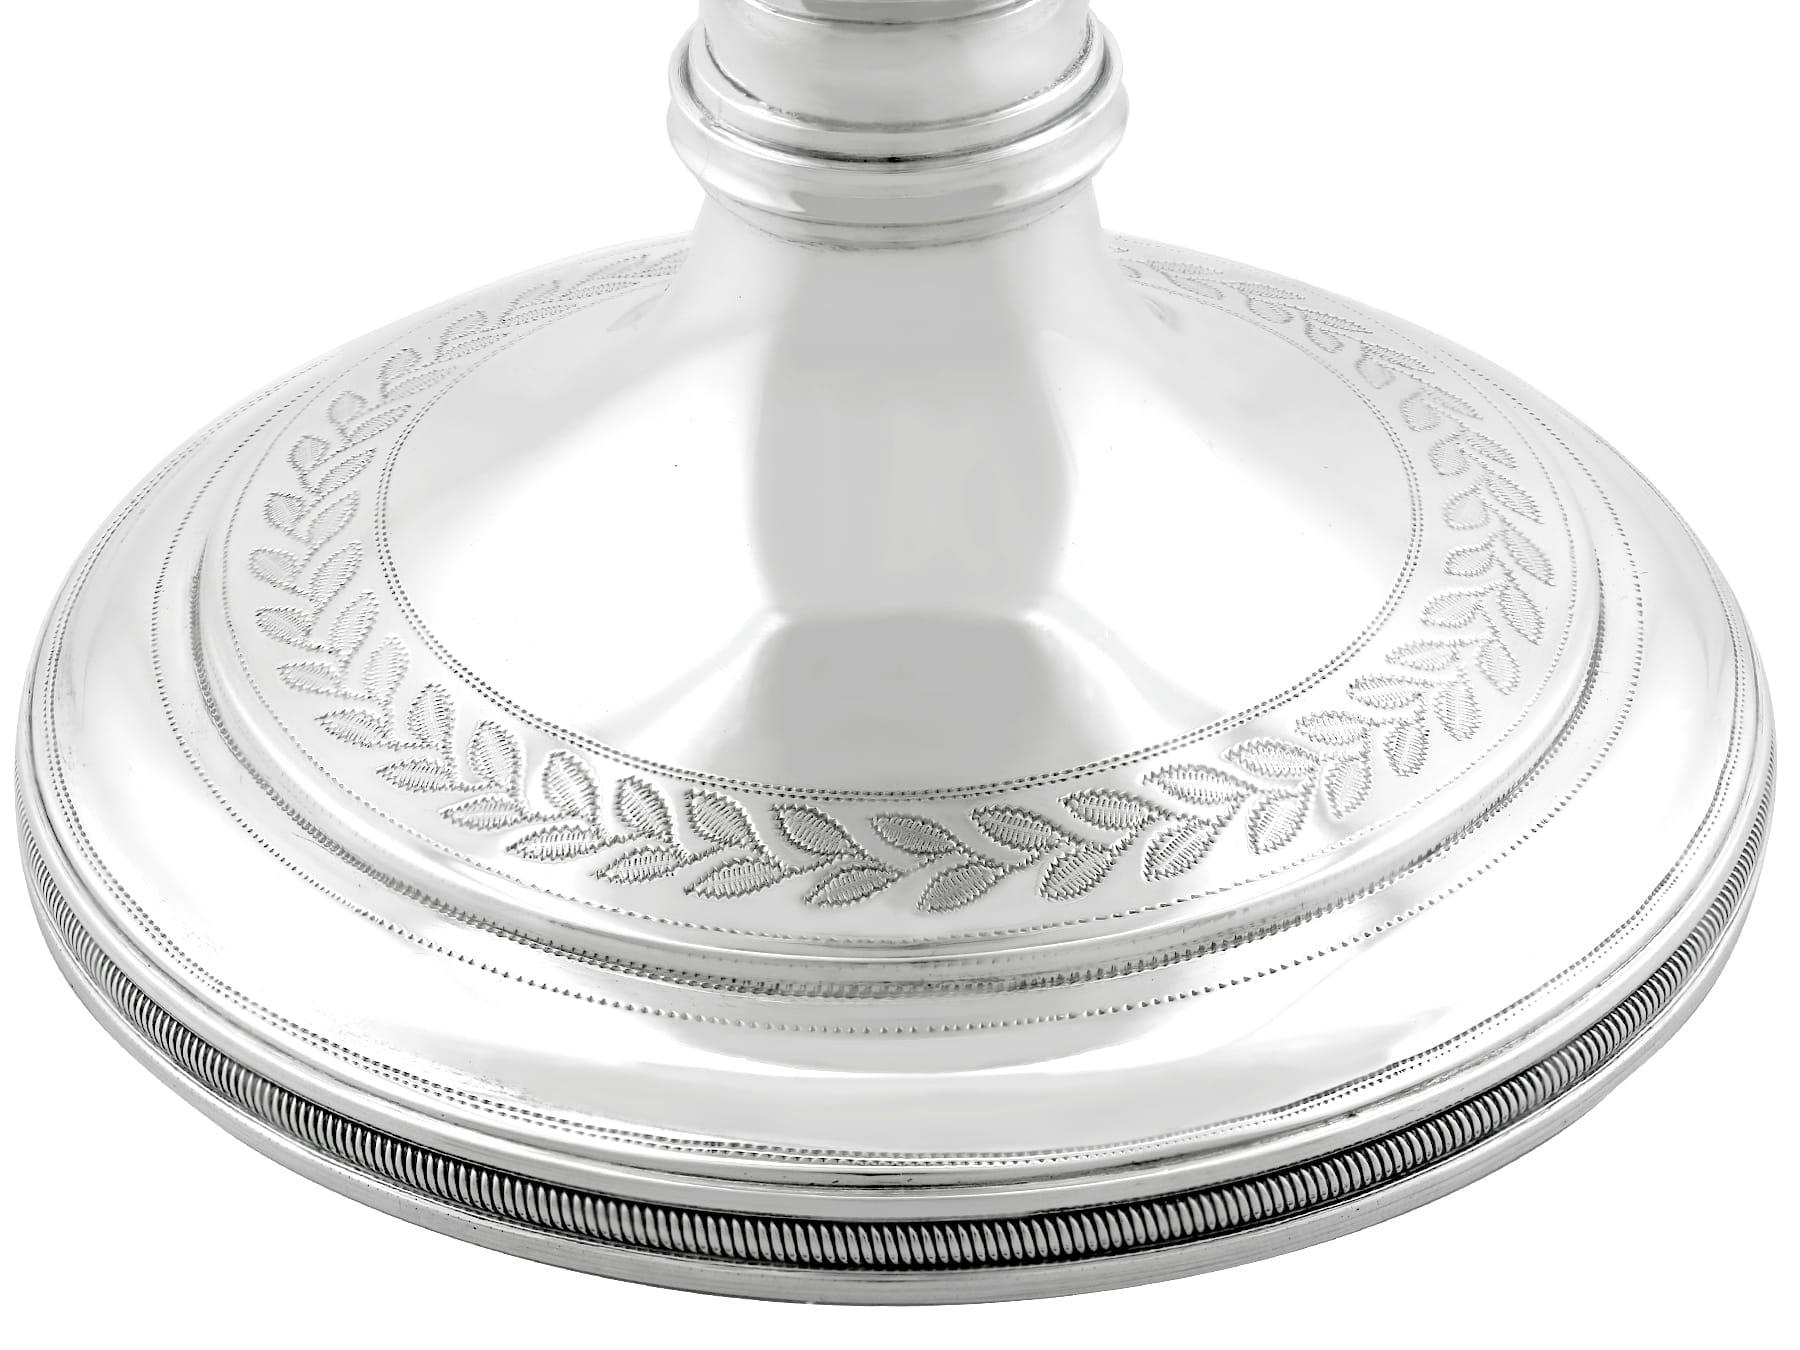 Antique George IV Scottish Sterling Silver Goblet (1820) 2